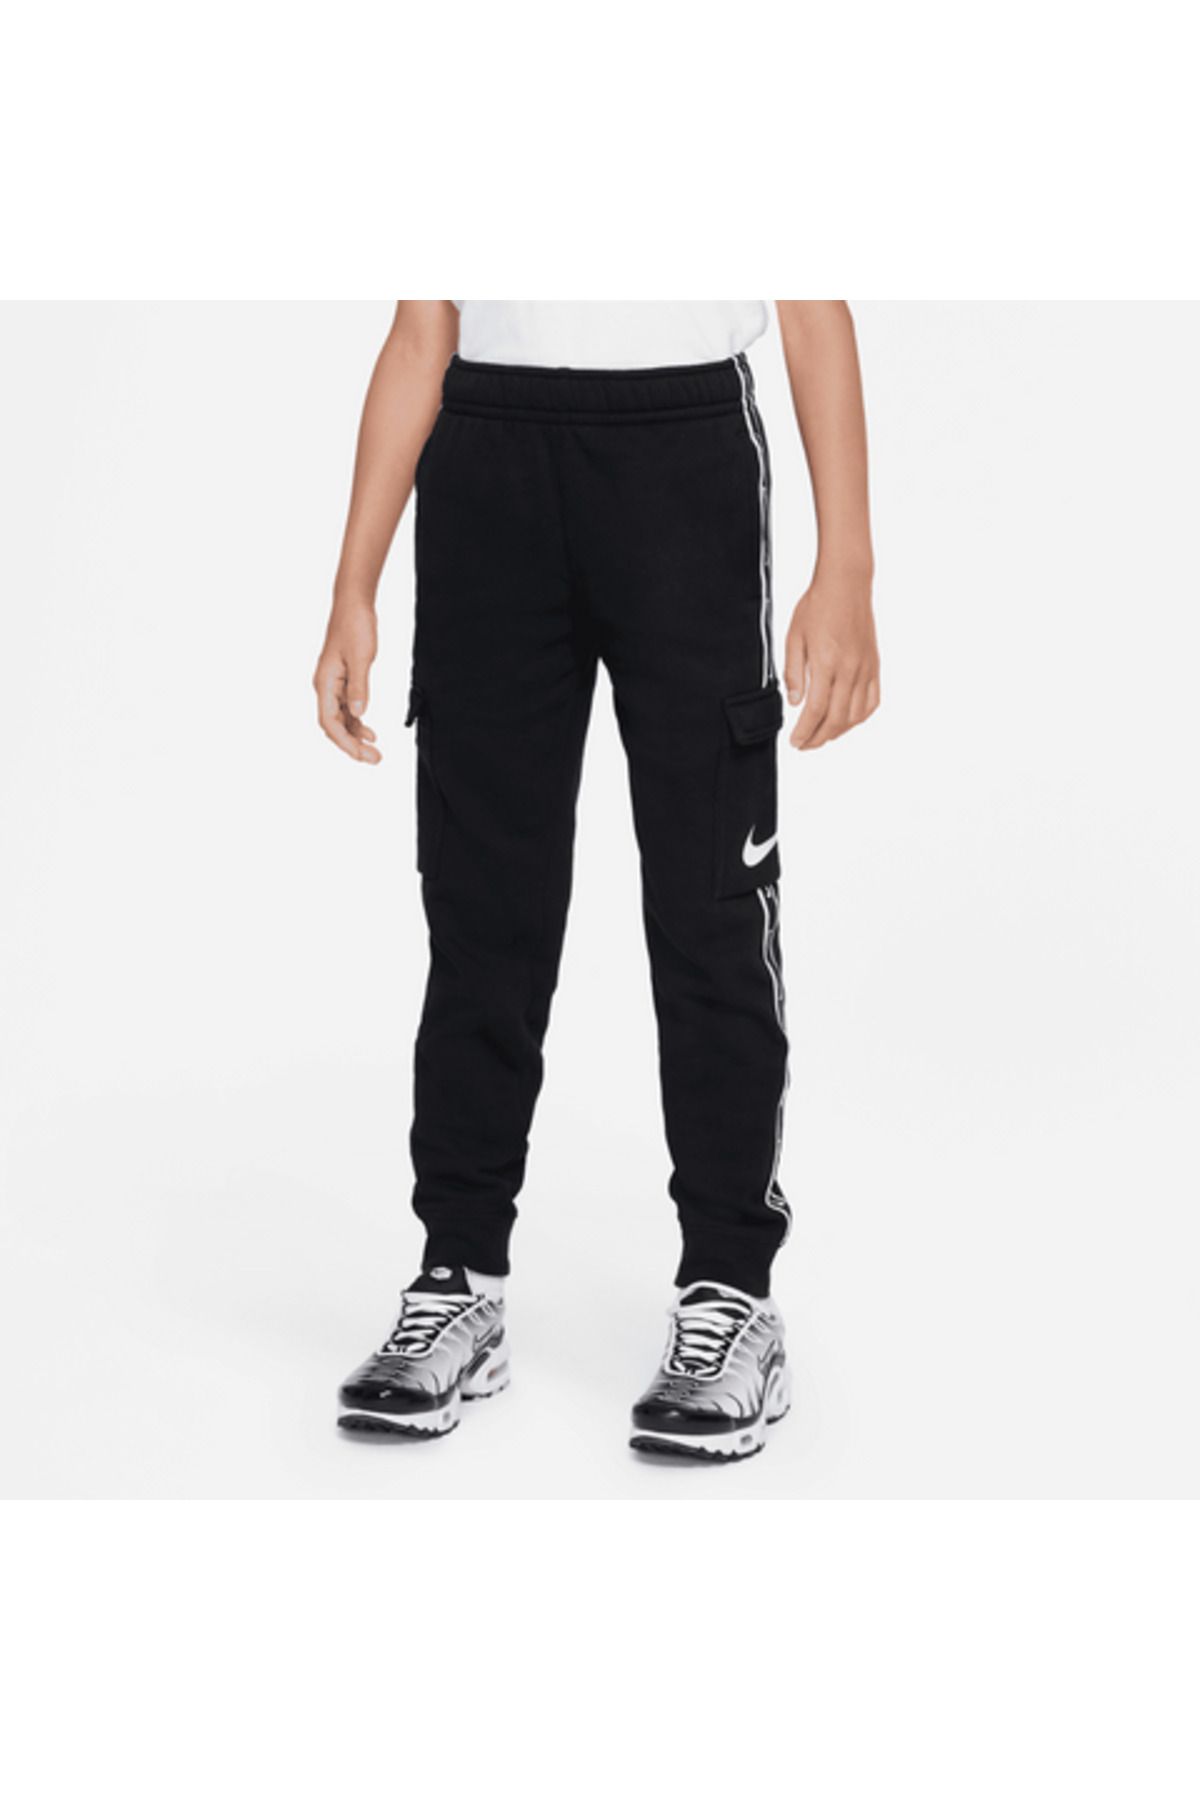 Nike Sportswear Repeat Çocuk Siyah Eşofman Altı FD0310-010